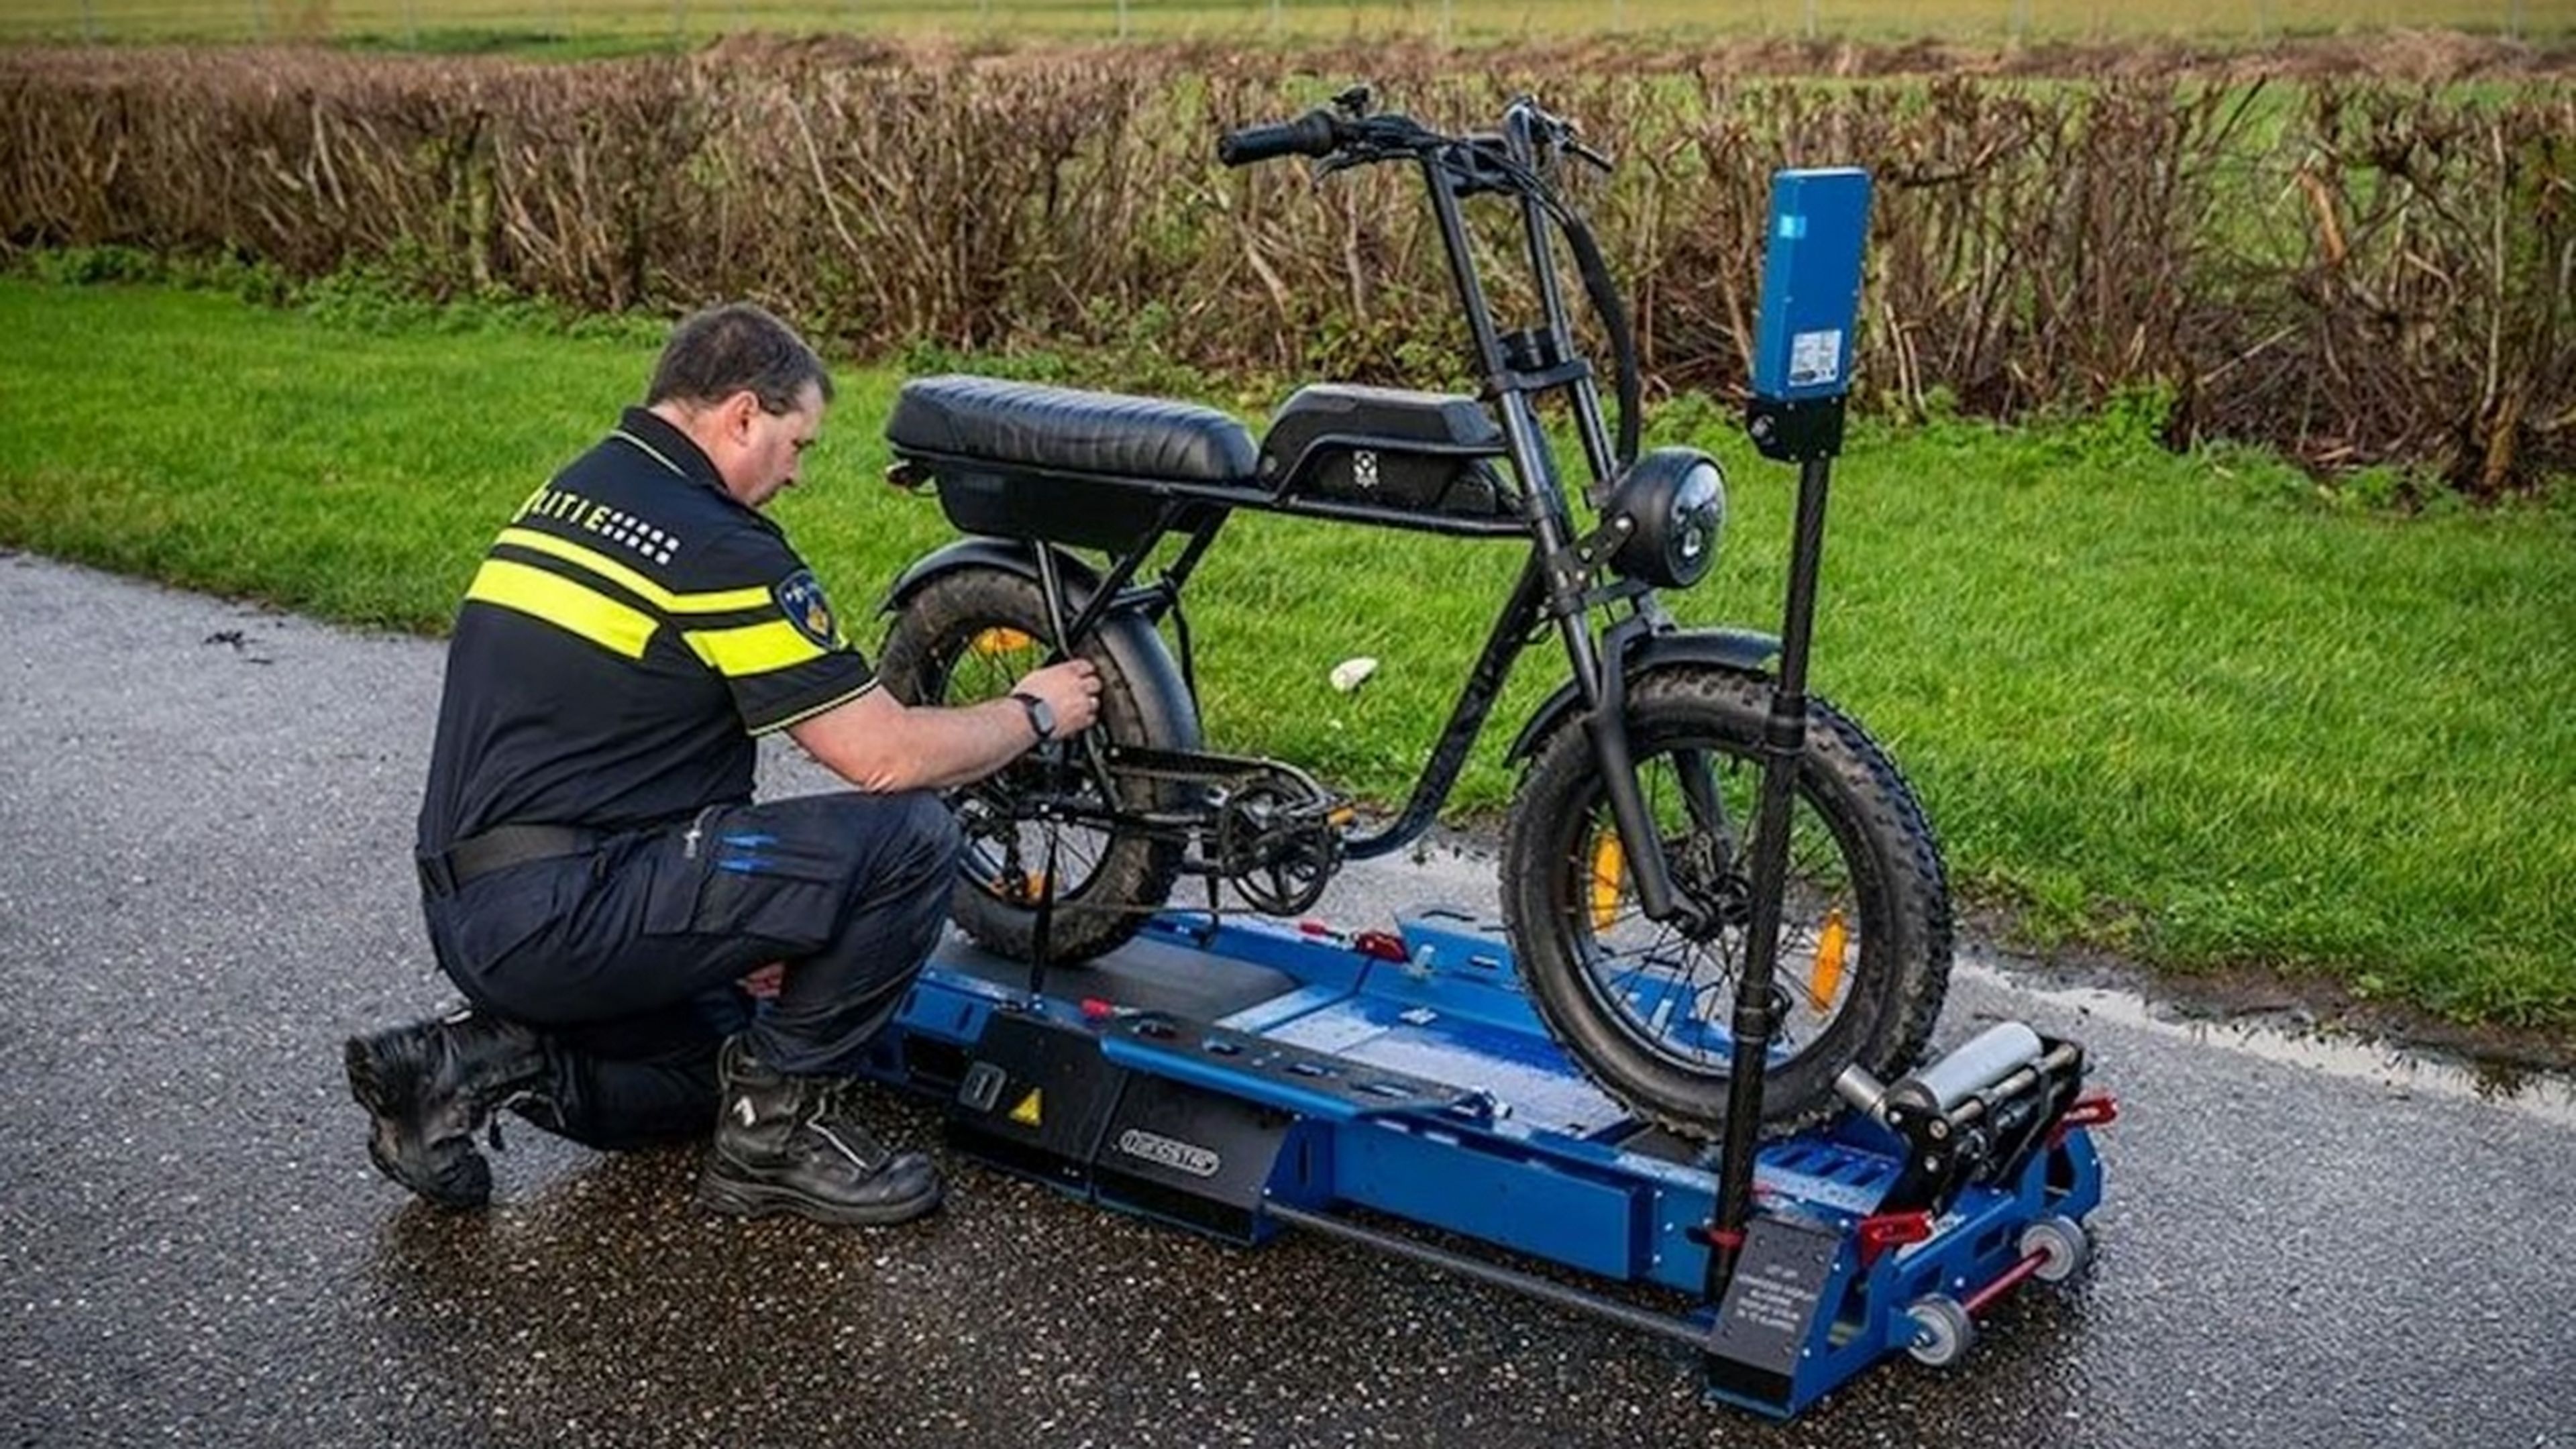 Cuidado si tienes una bicicleta eléctrica trucada: la policía tiene un nuevo arma secreta para pillarlas